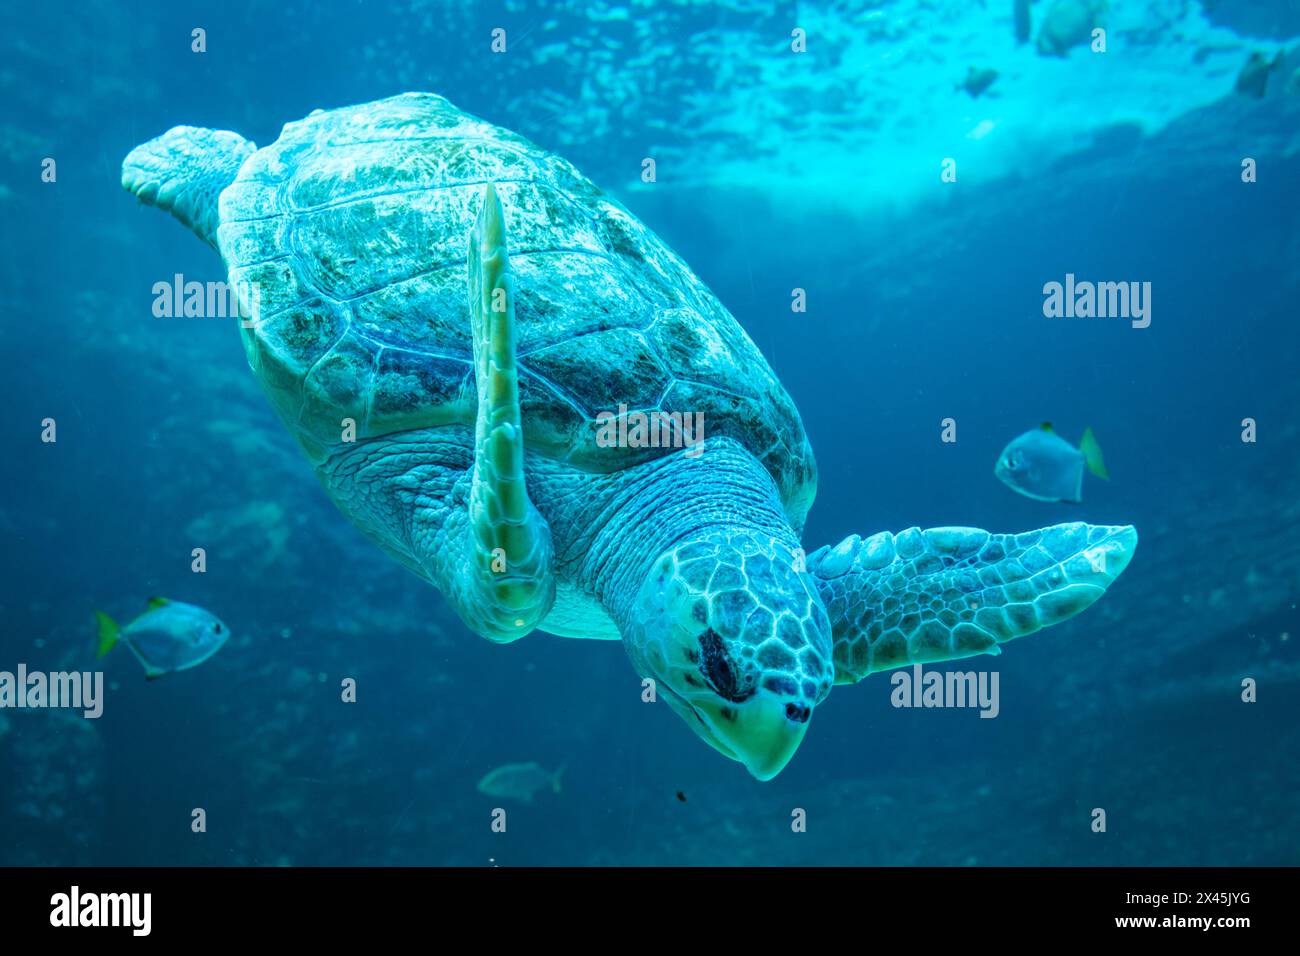 Turtle swimming underwater Stock Photo